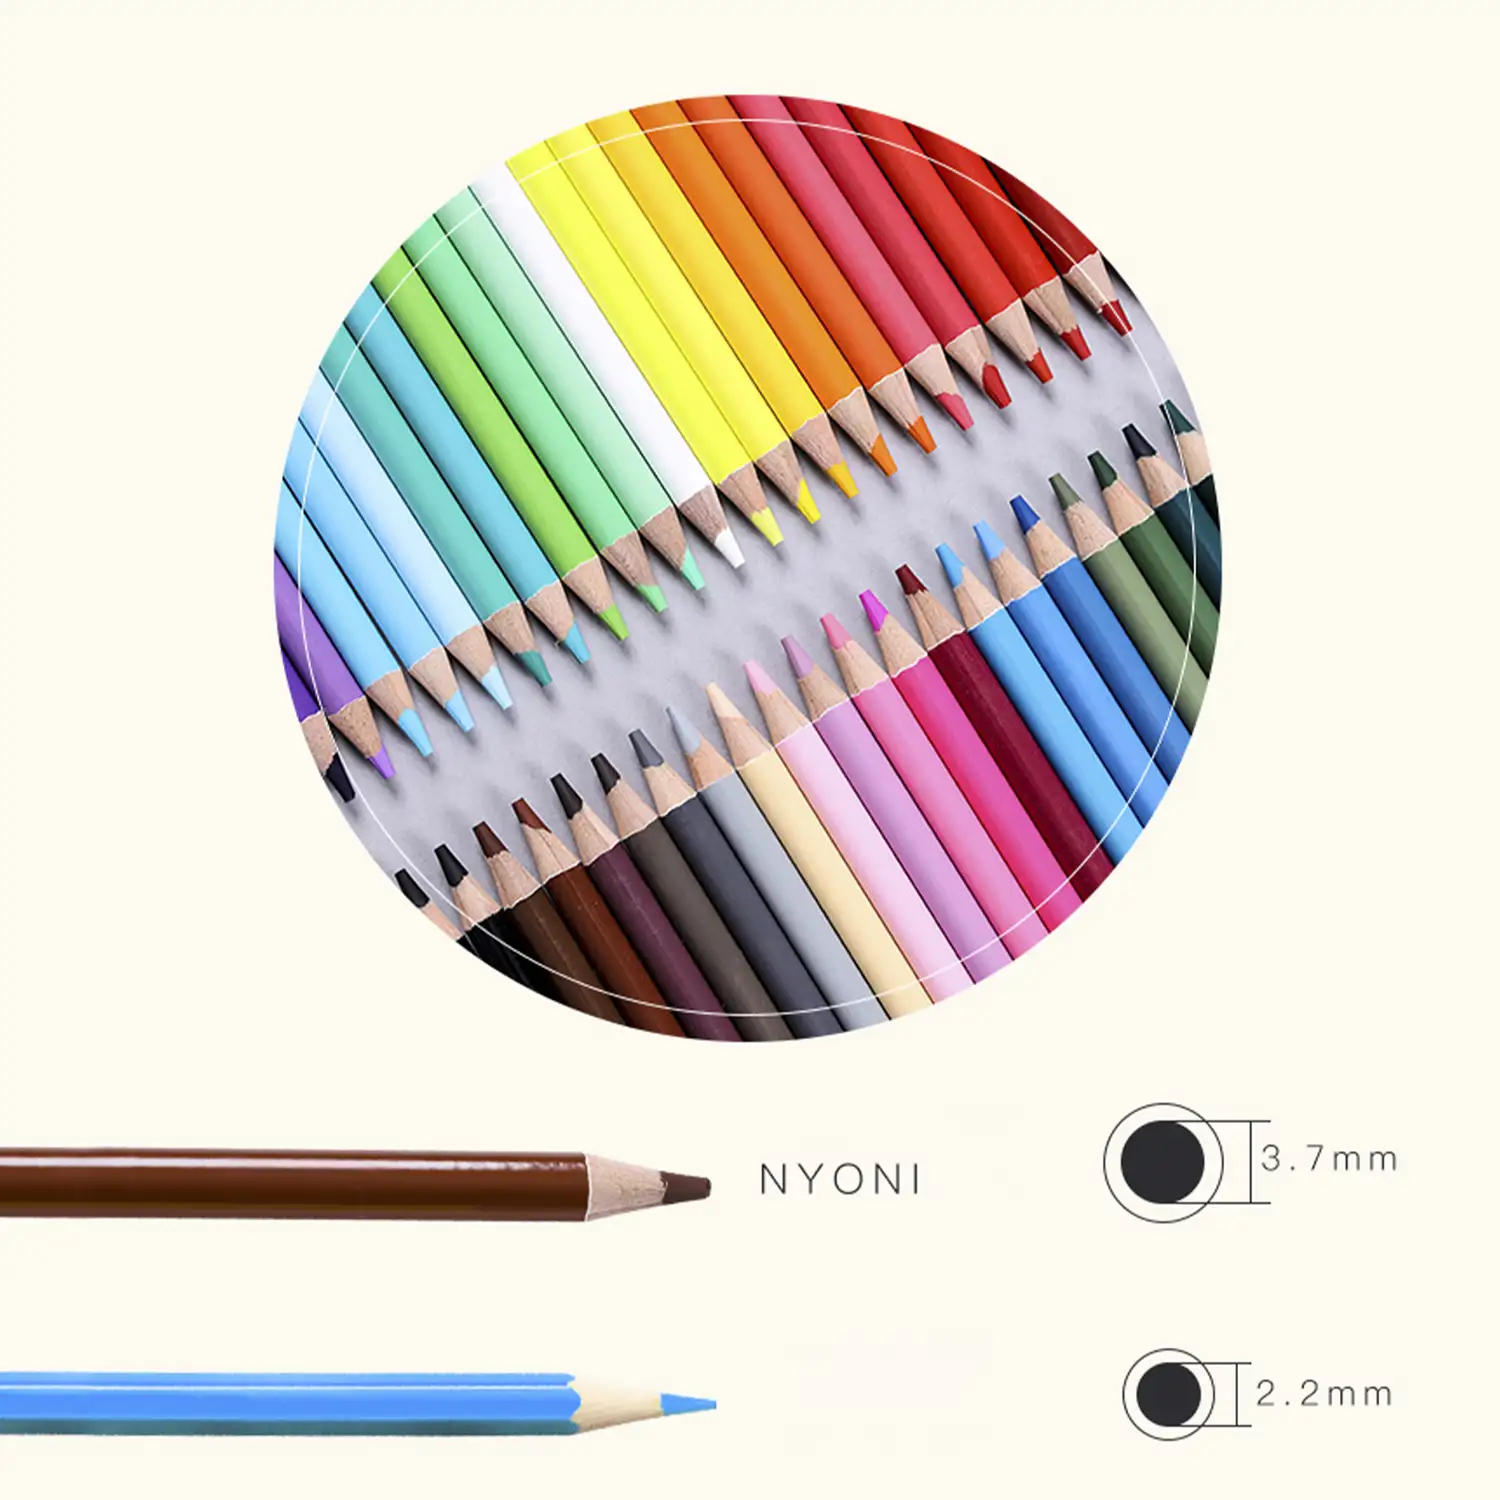 Set de 48 lápices de colores. Fabricados en madera, forma redonda profesional.